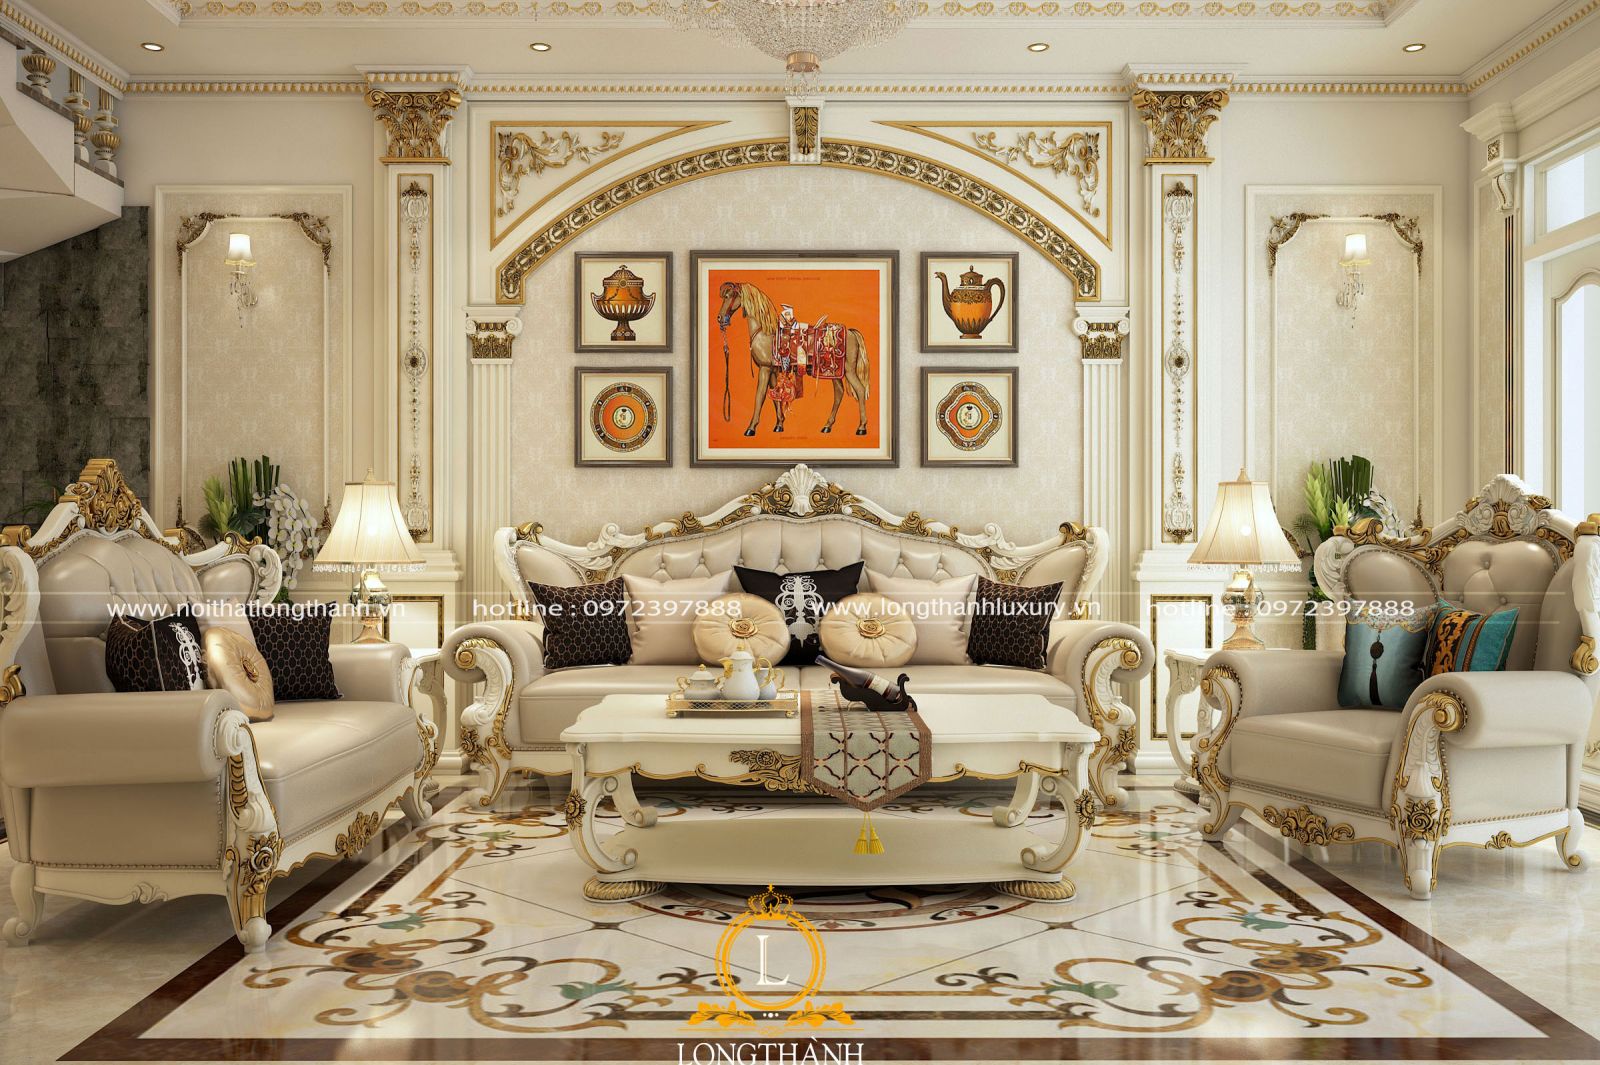 Phong cách tân cổ điển dát vàng hoa văn được lựa chọn sử dụng cho mẫu sofa phòng khách này